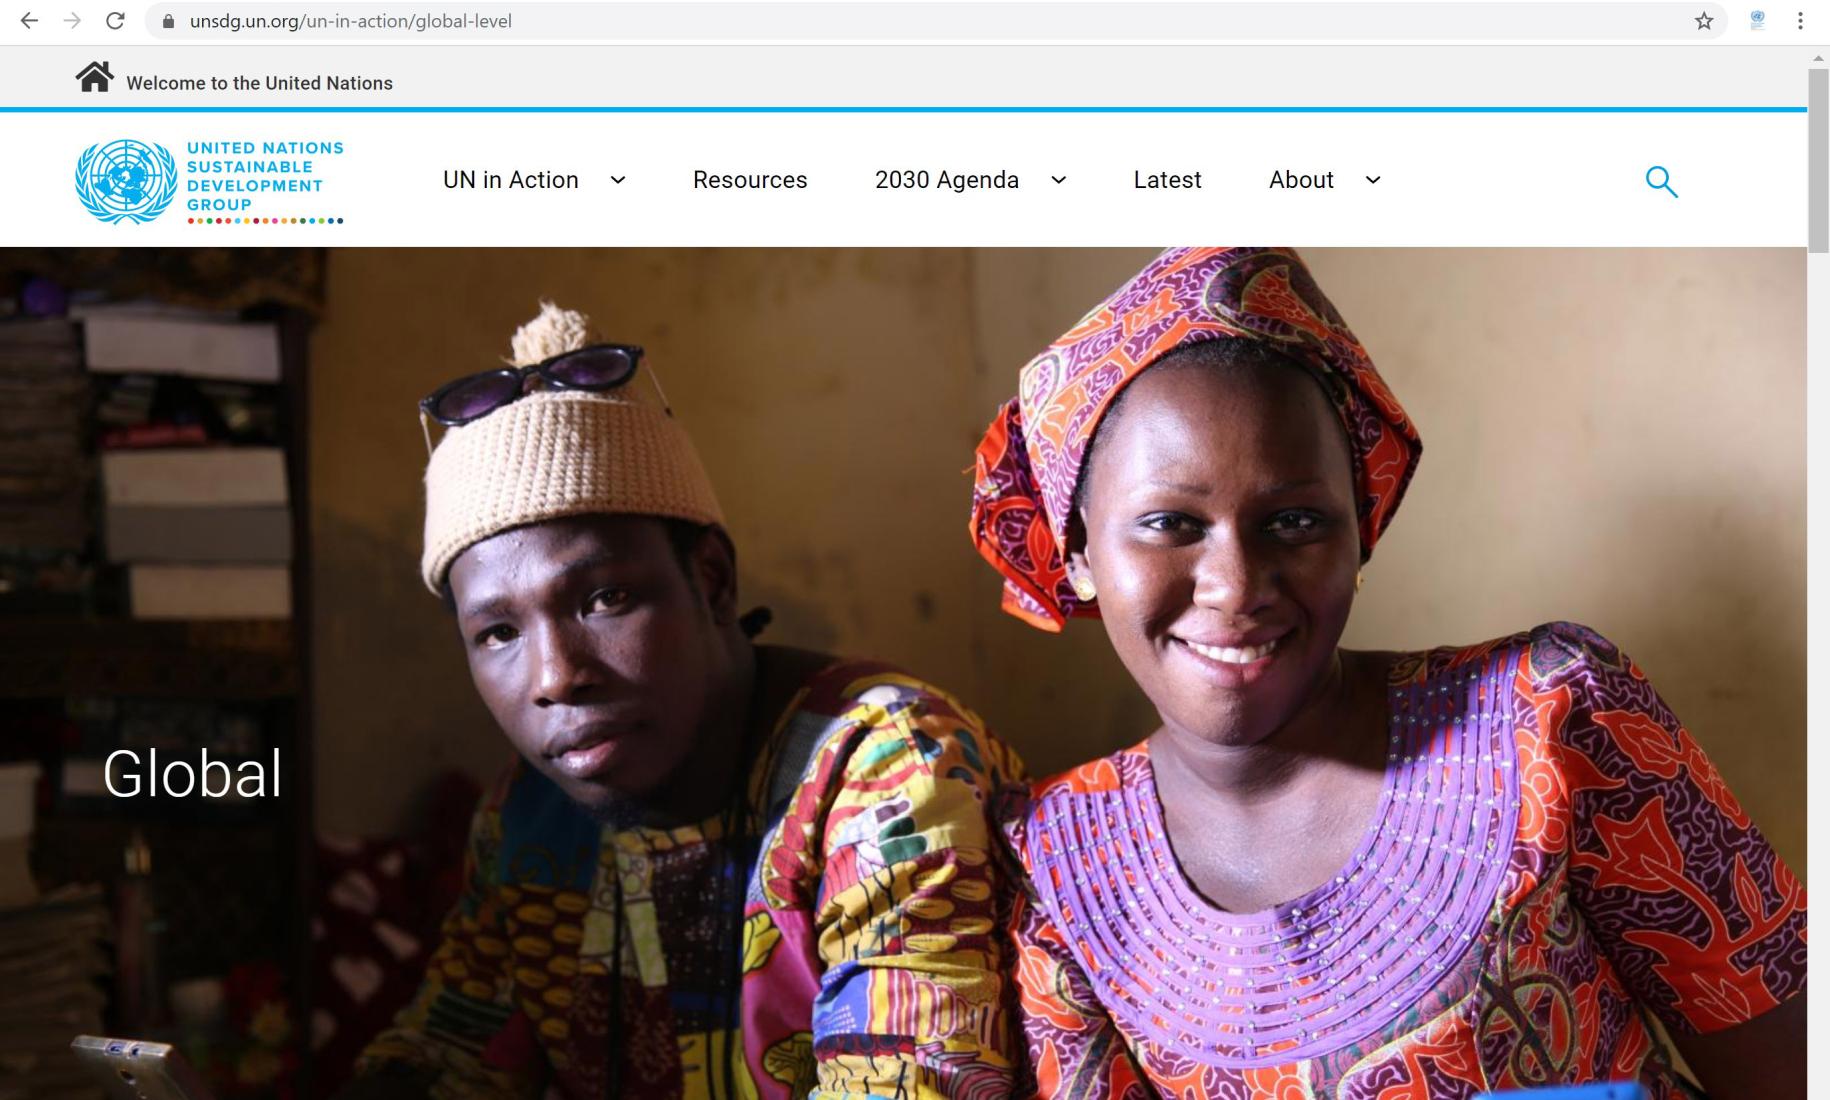 لقطة شاشة من الموقع الالكتروني لمجموعة الأمم المتحدة للتنمية المستدامة.